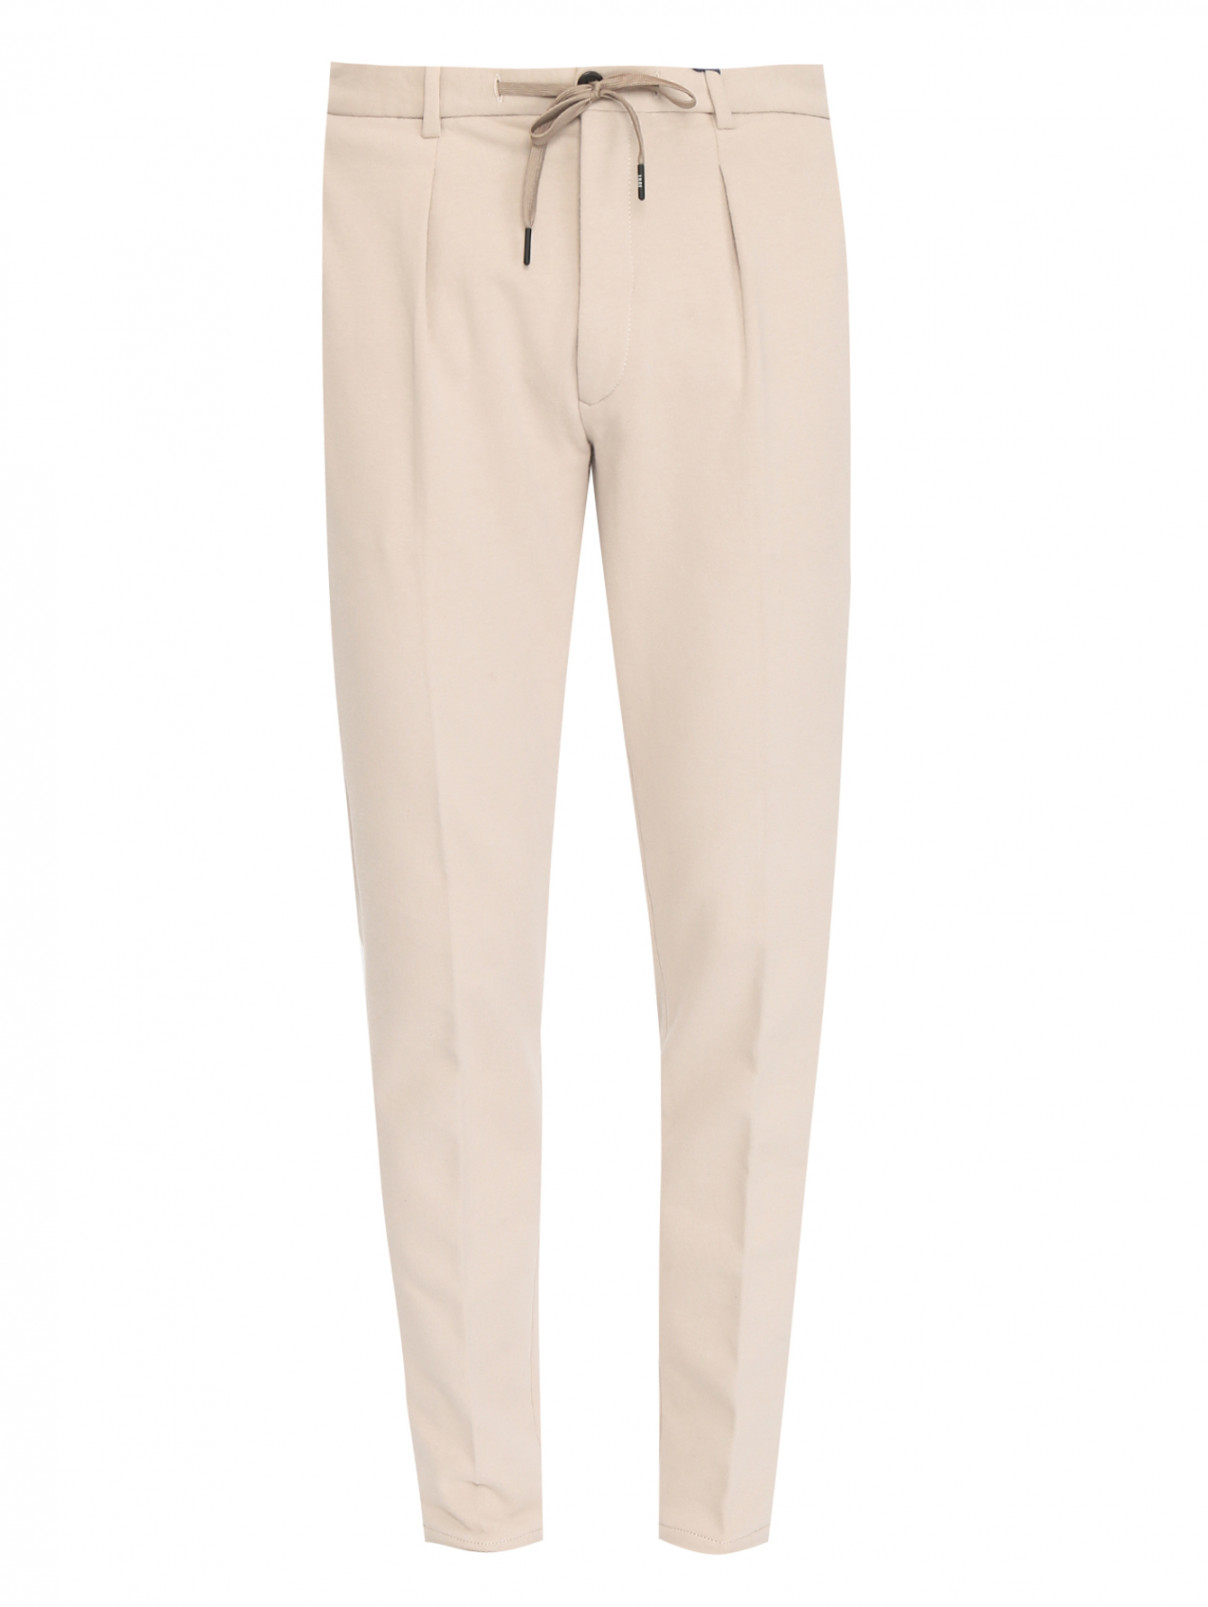 Трикотажные брюки из хлопка с карманами Circolo  –  Общий вид  – Цвет:  Бежевый